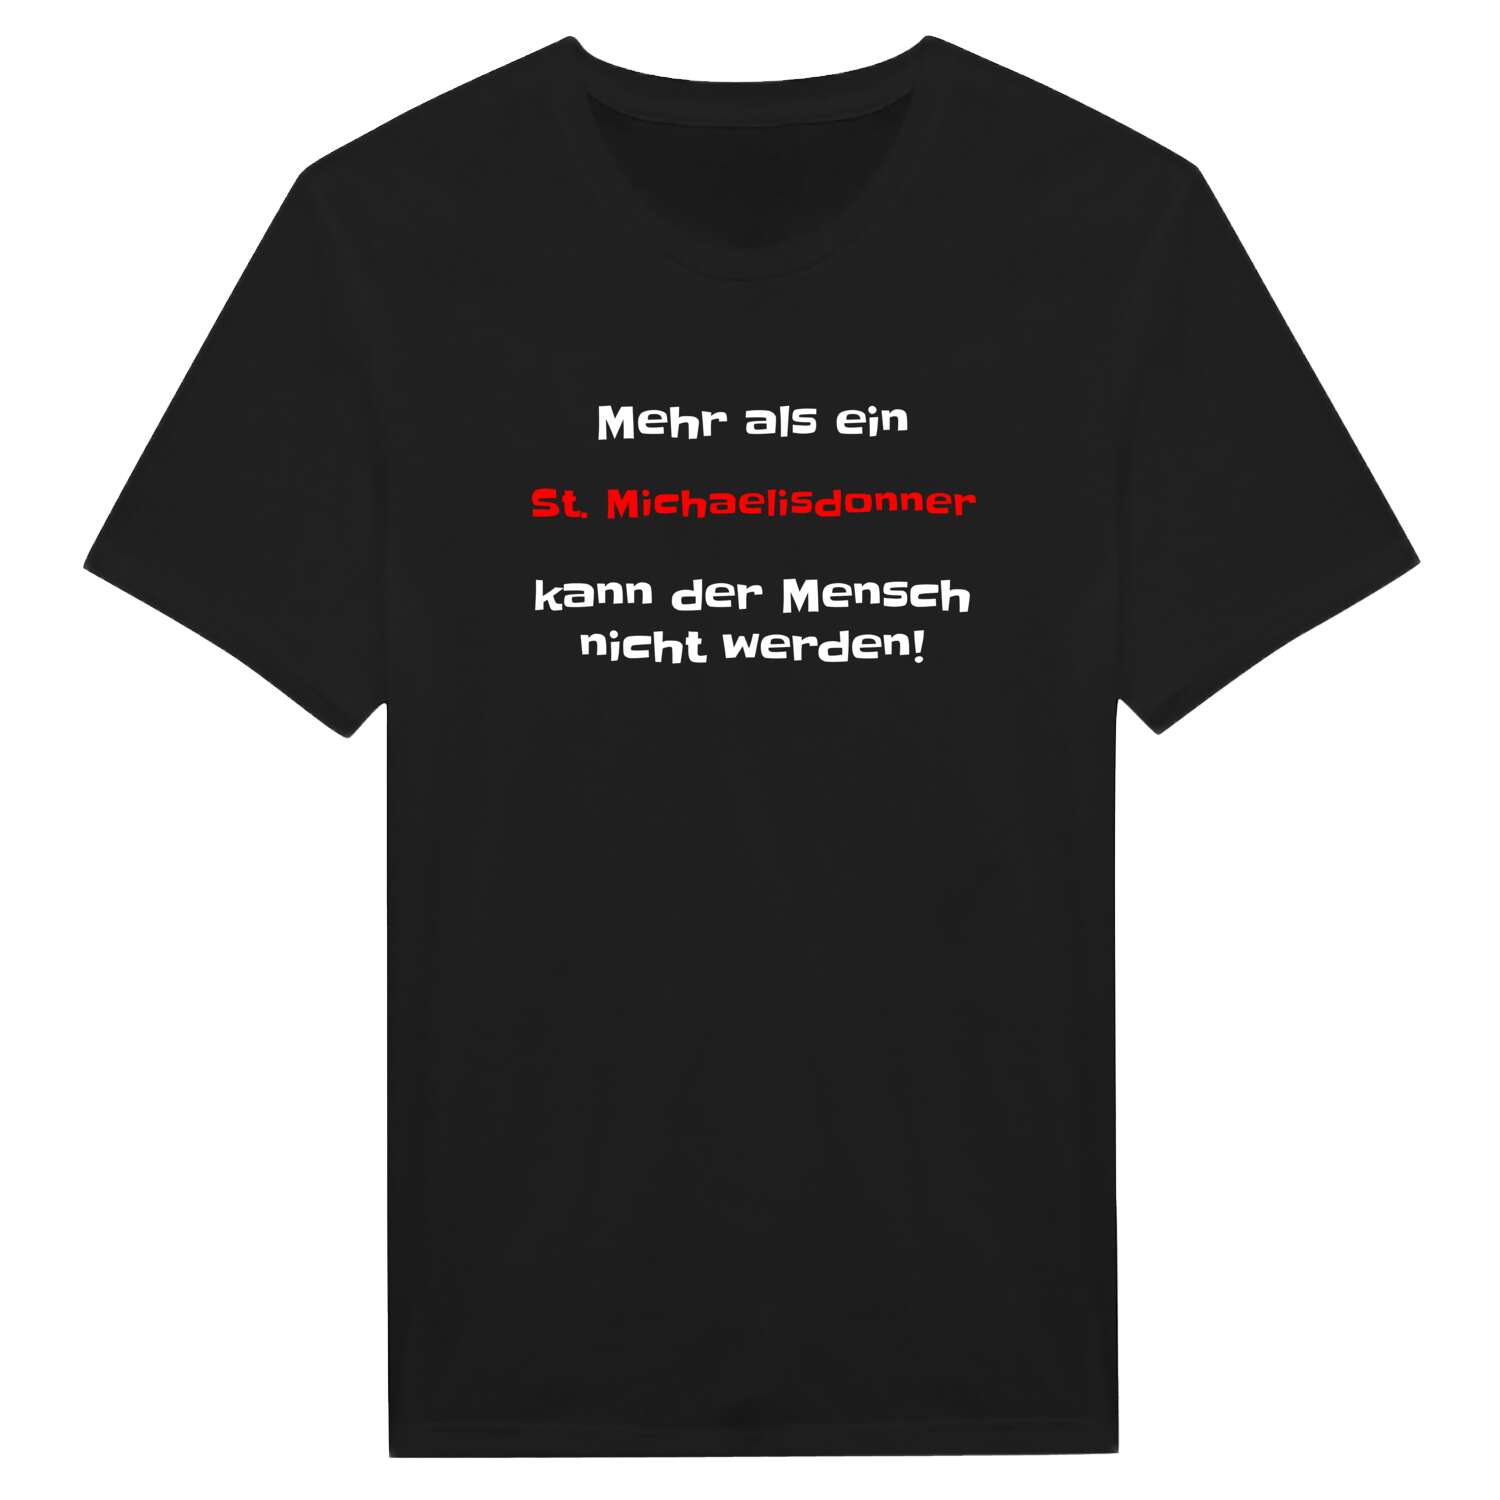 St. Michaelisdonn T-Shirt »Mehr als ein«